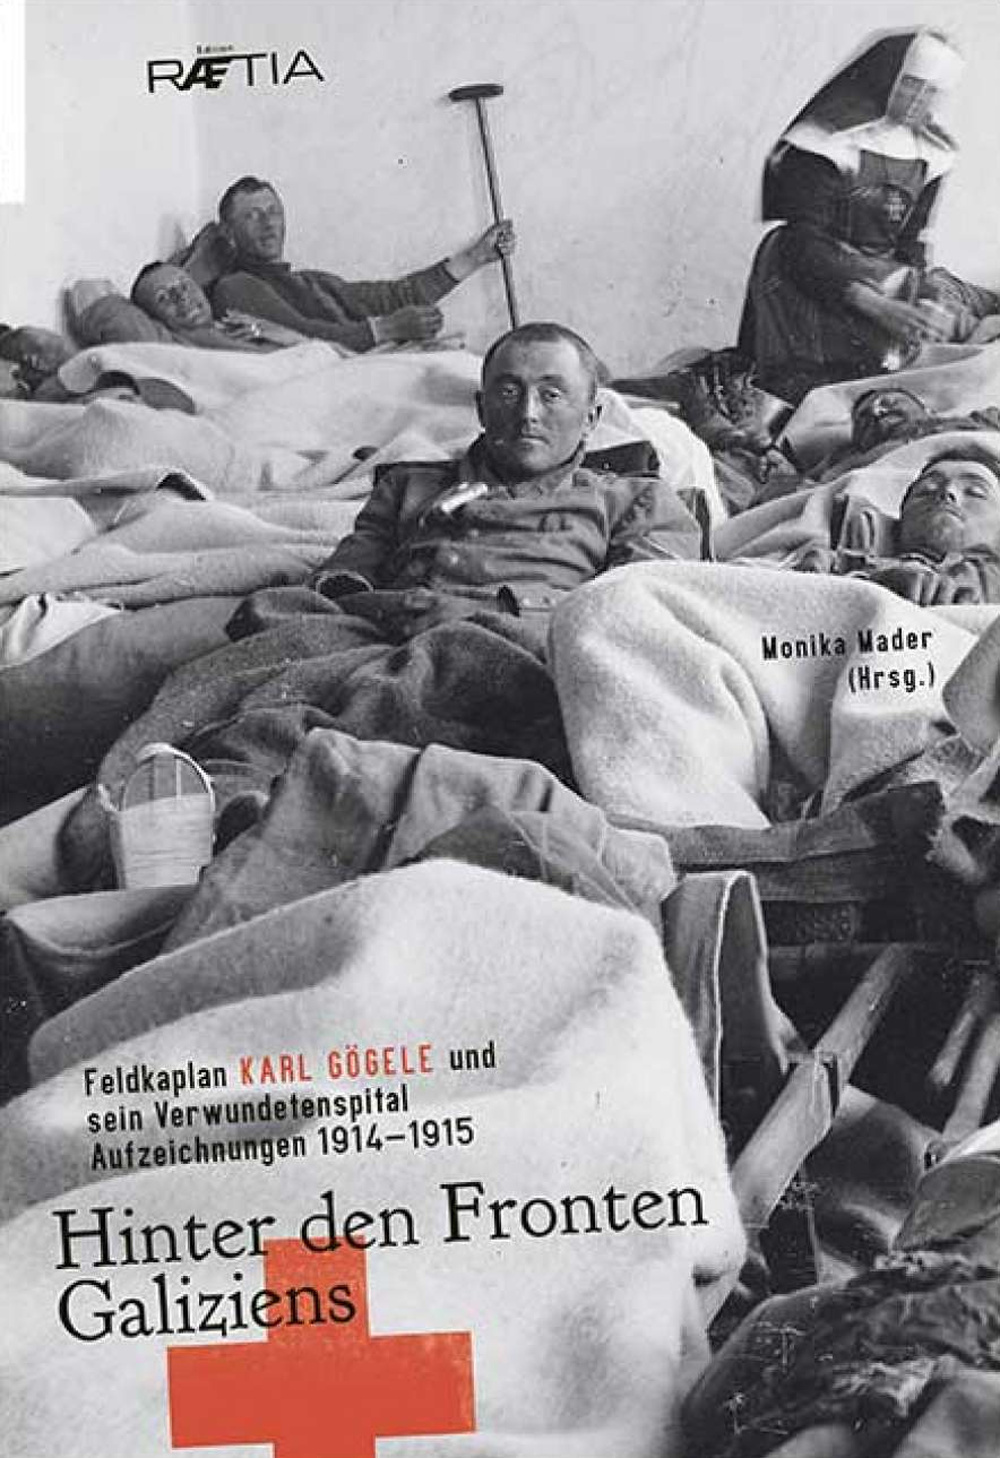 Hinter den Fronten Galiziens. Feldkaplan Karl Gögele und sein Verwundetenspital Aufzeichnungen 1914-1915